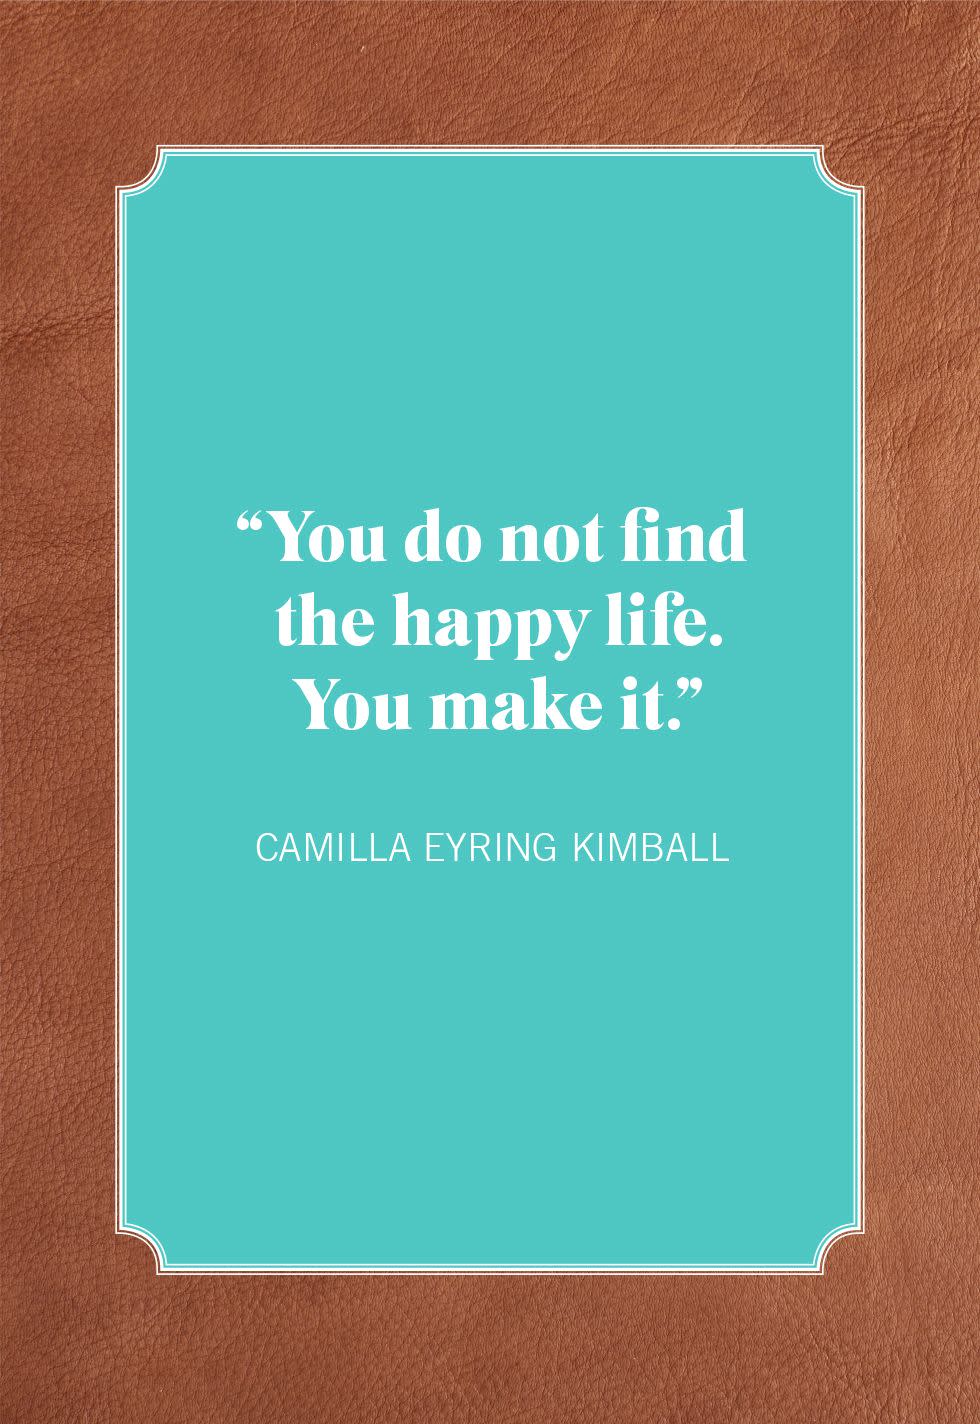 camilla eyring kimball short inspirational quotes